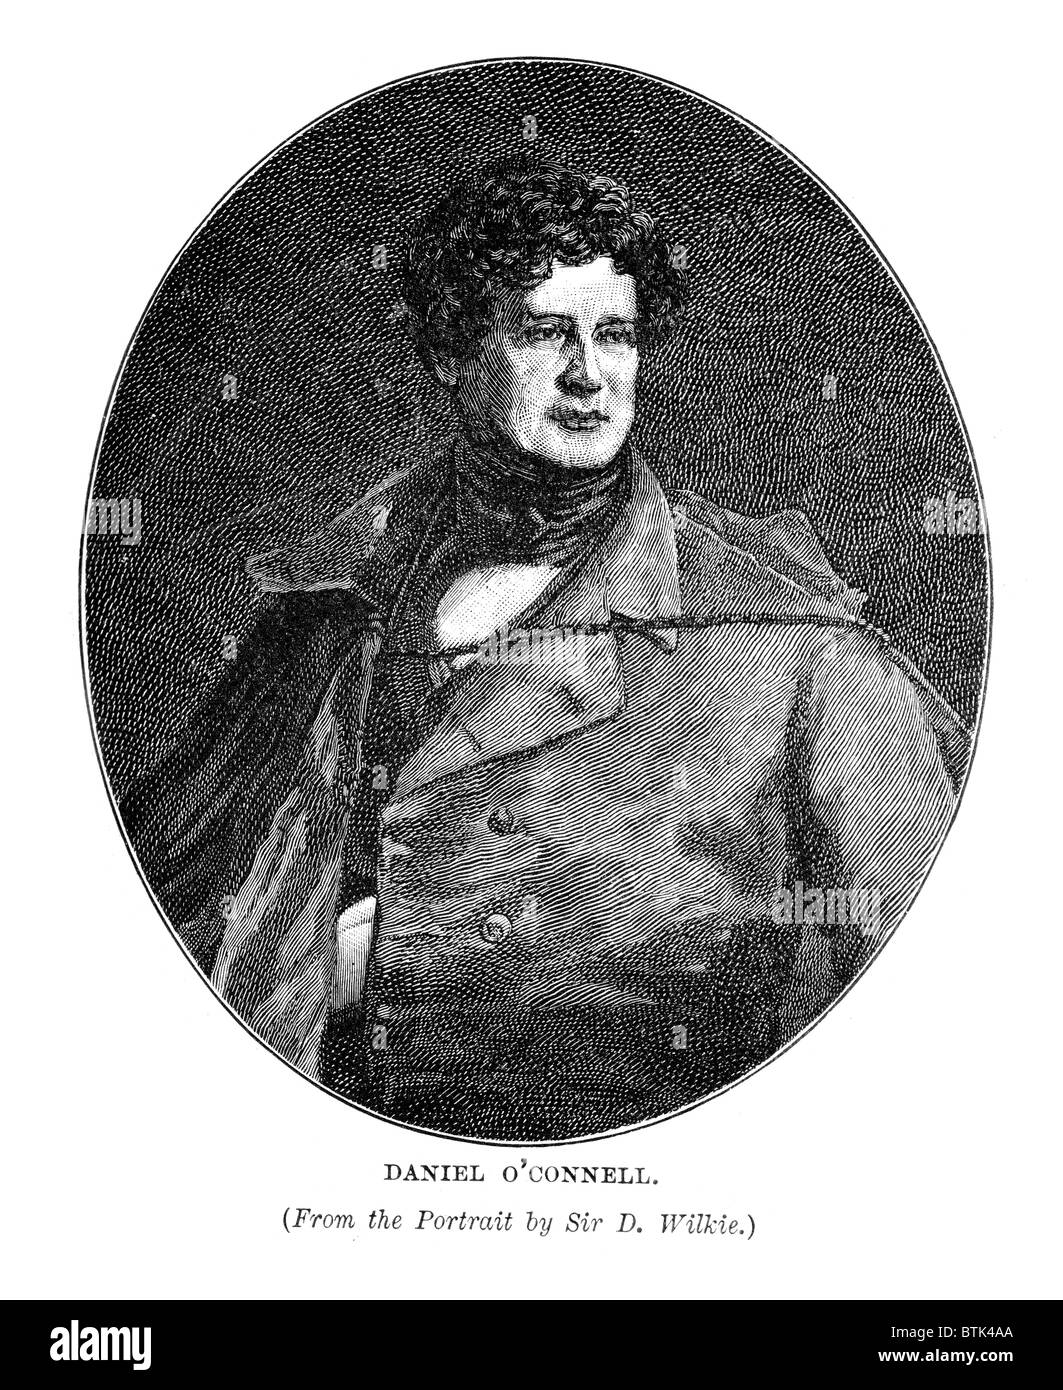 Dónal Ó Conaill (1775-1847), bekannt als der Befreier oder der Befreier, war ein irischer Politiker. Stockfoto